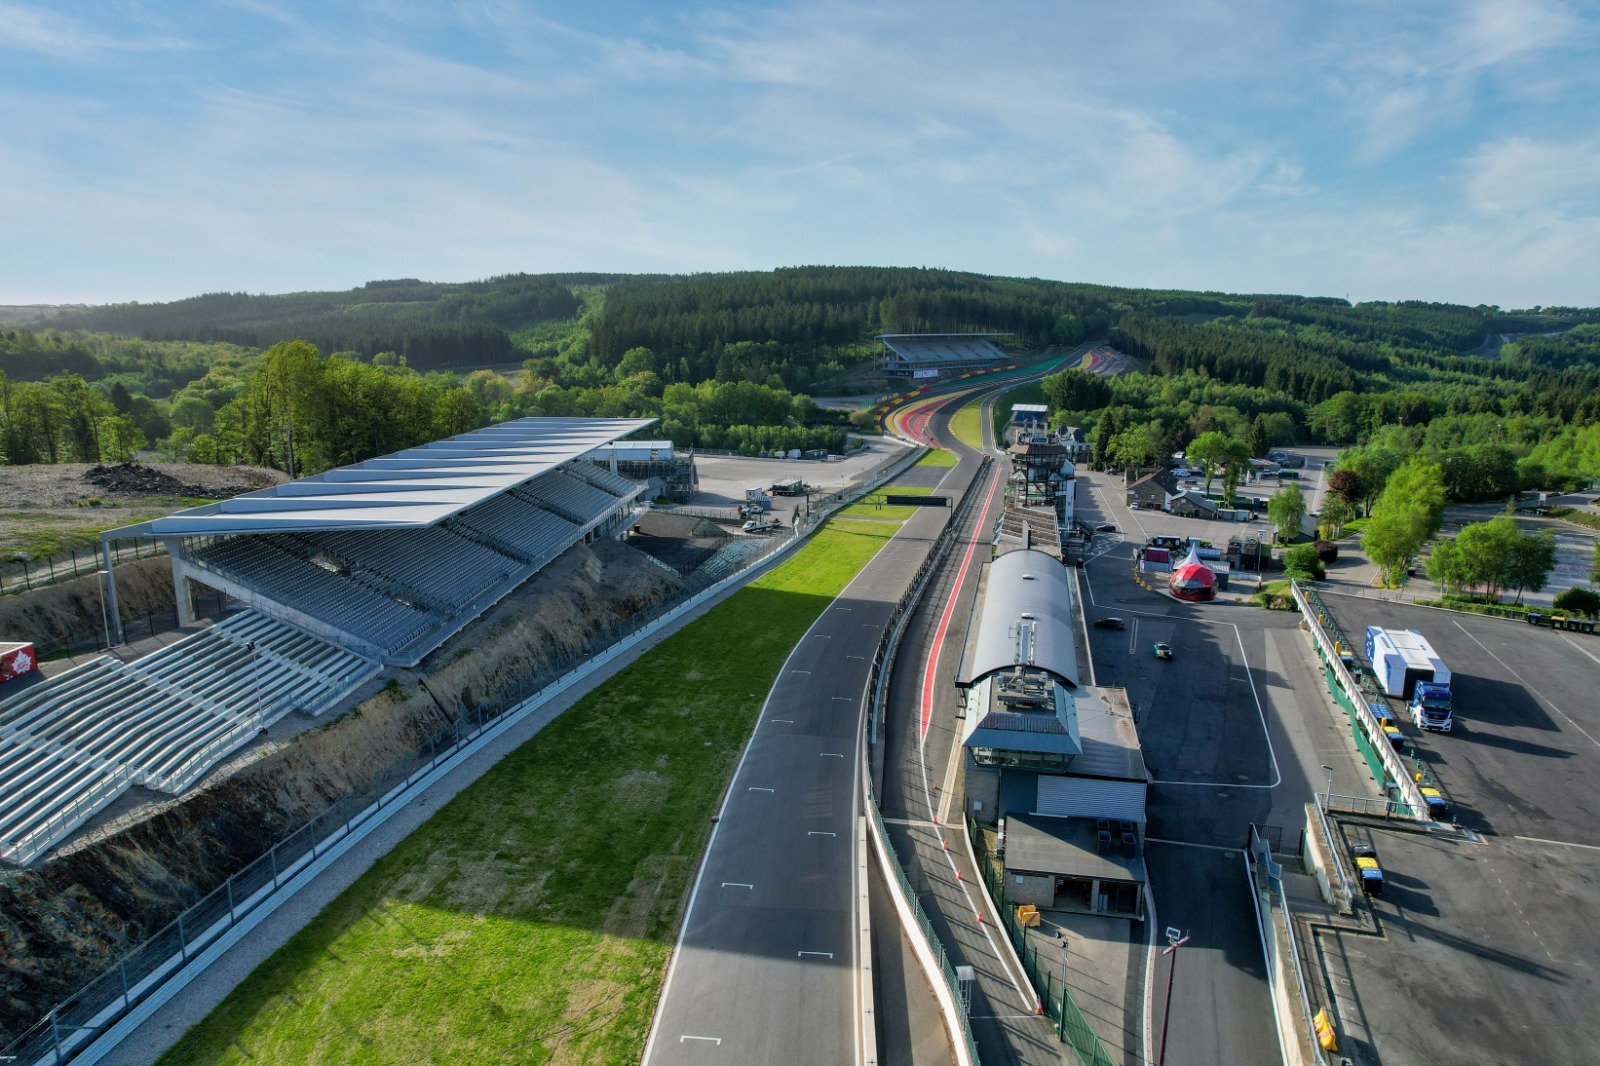 Vue aérienne du Circuit de Spa-Francorchamps